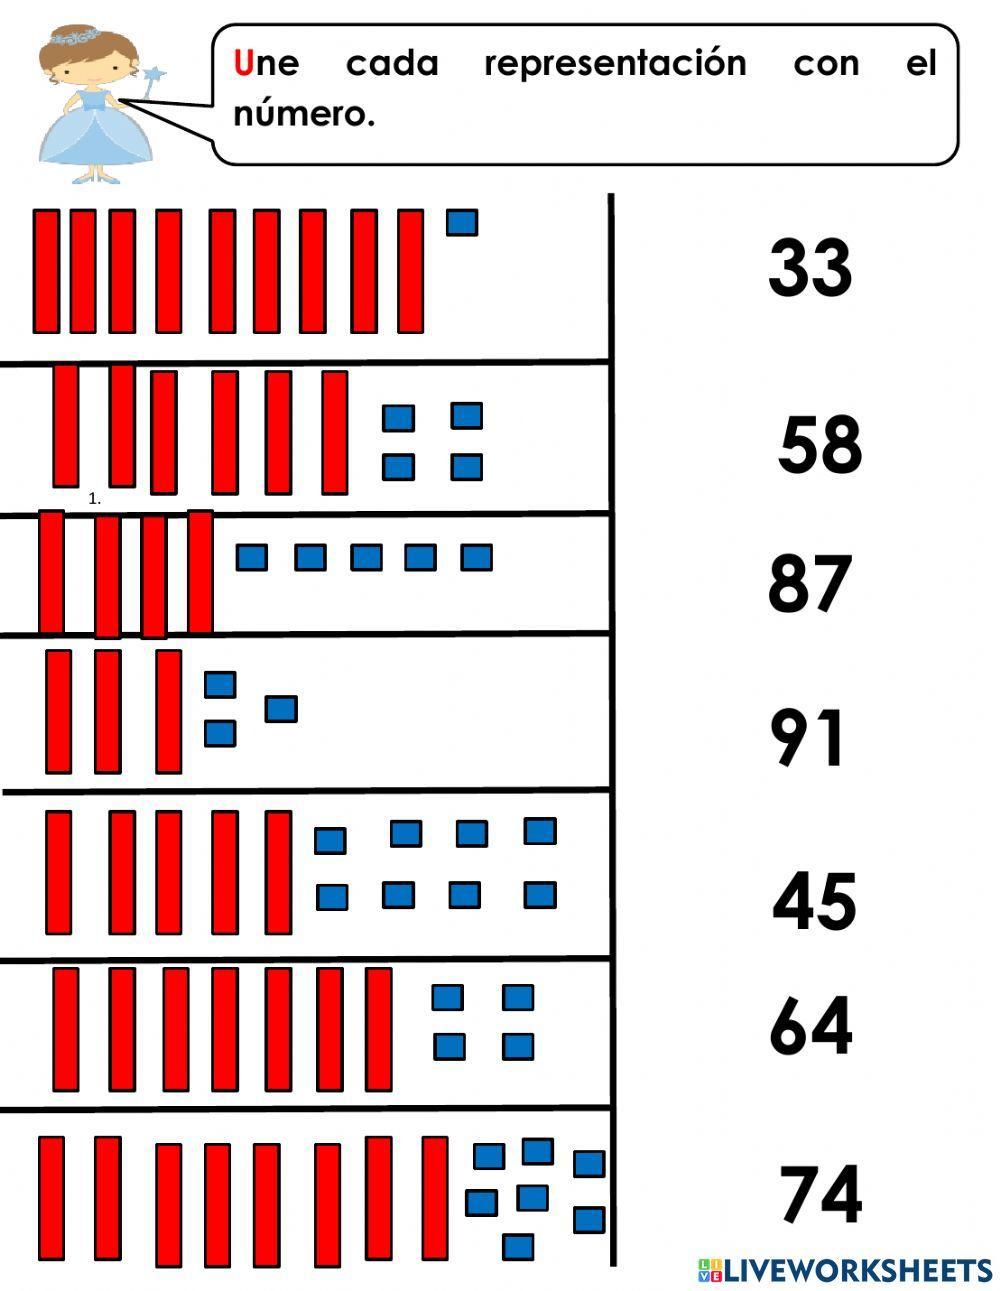 Unir números con su representación en decenas y unidades.